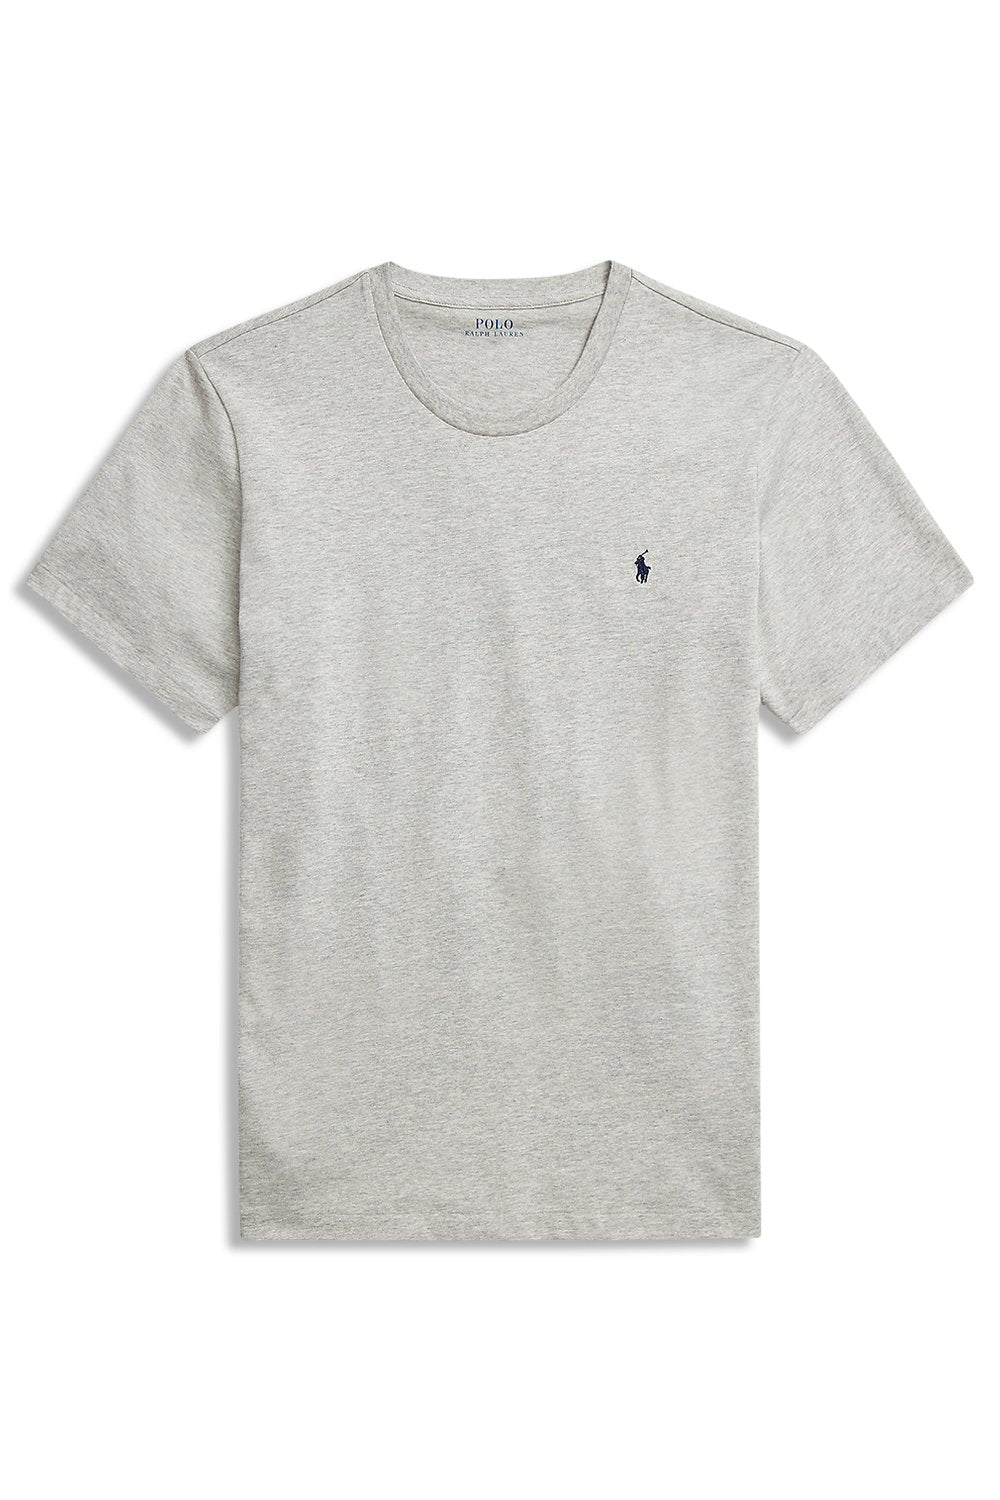 Men's Grey Ralph Lauren Polo Short Sleeve T-Shirt